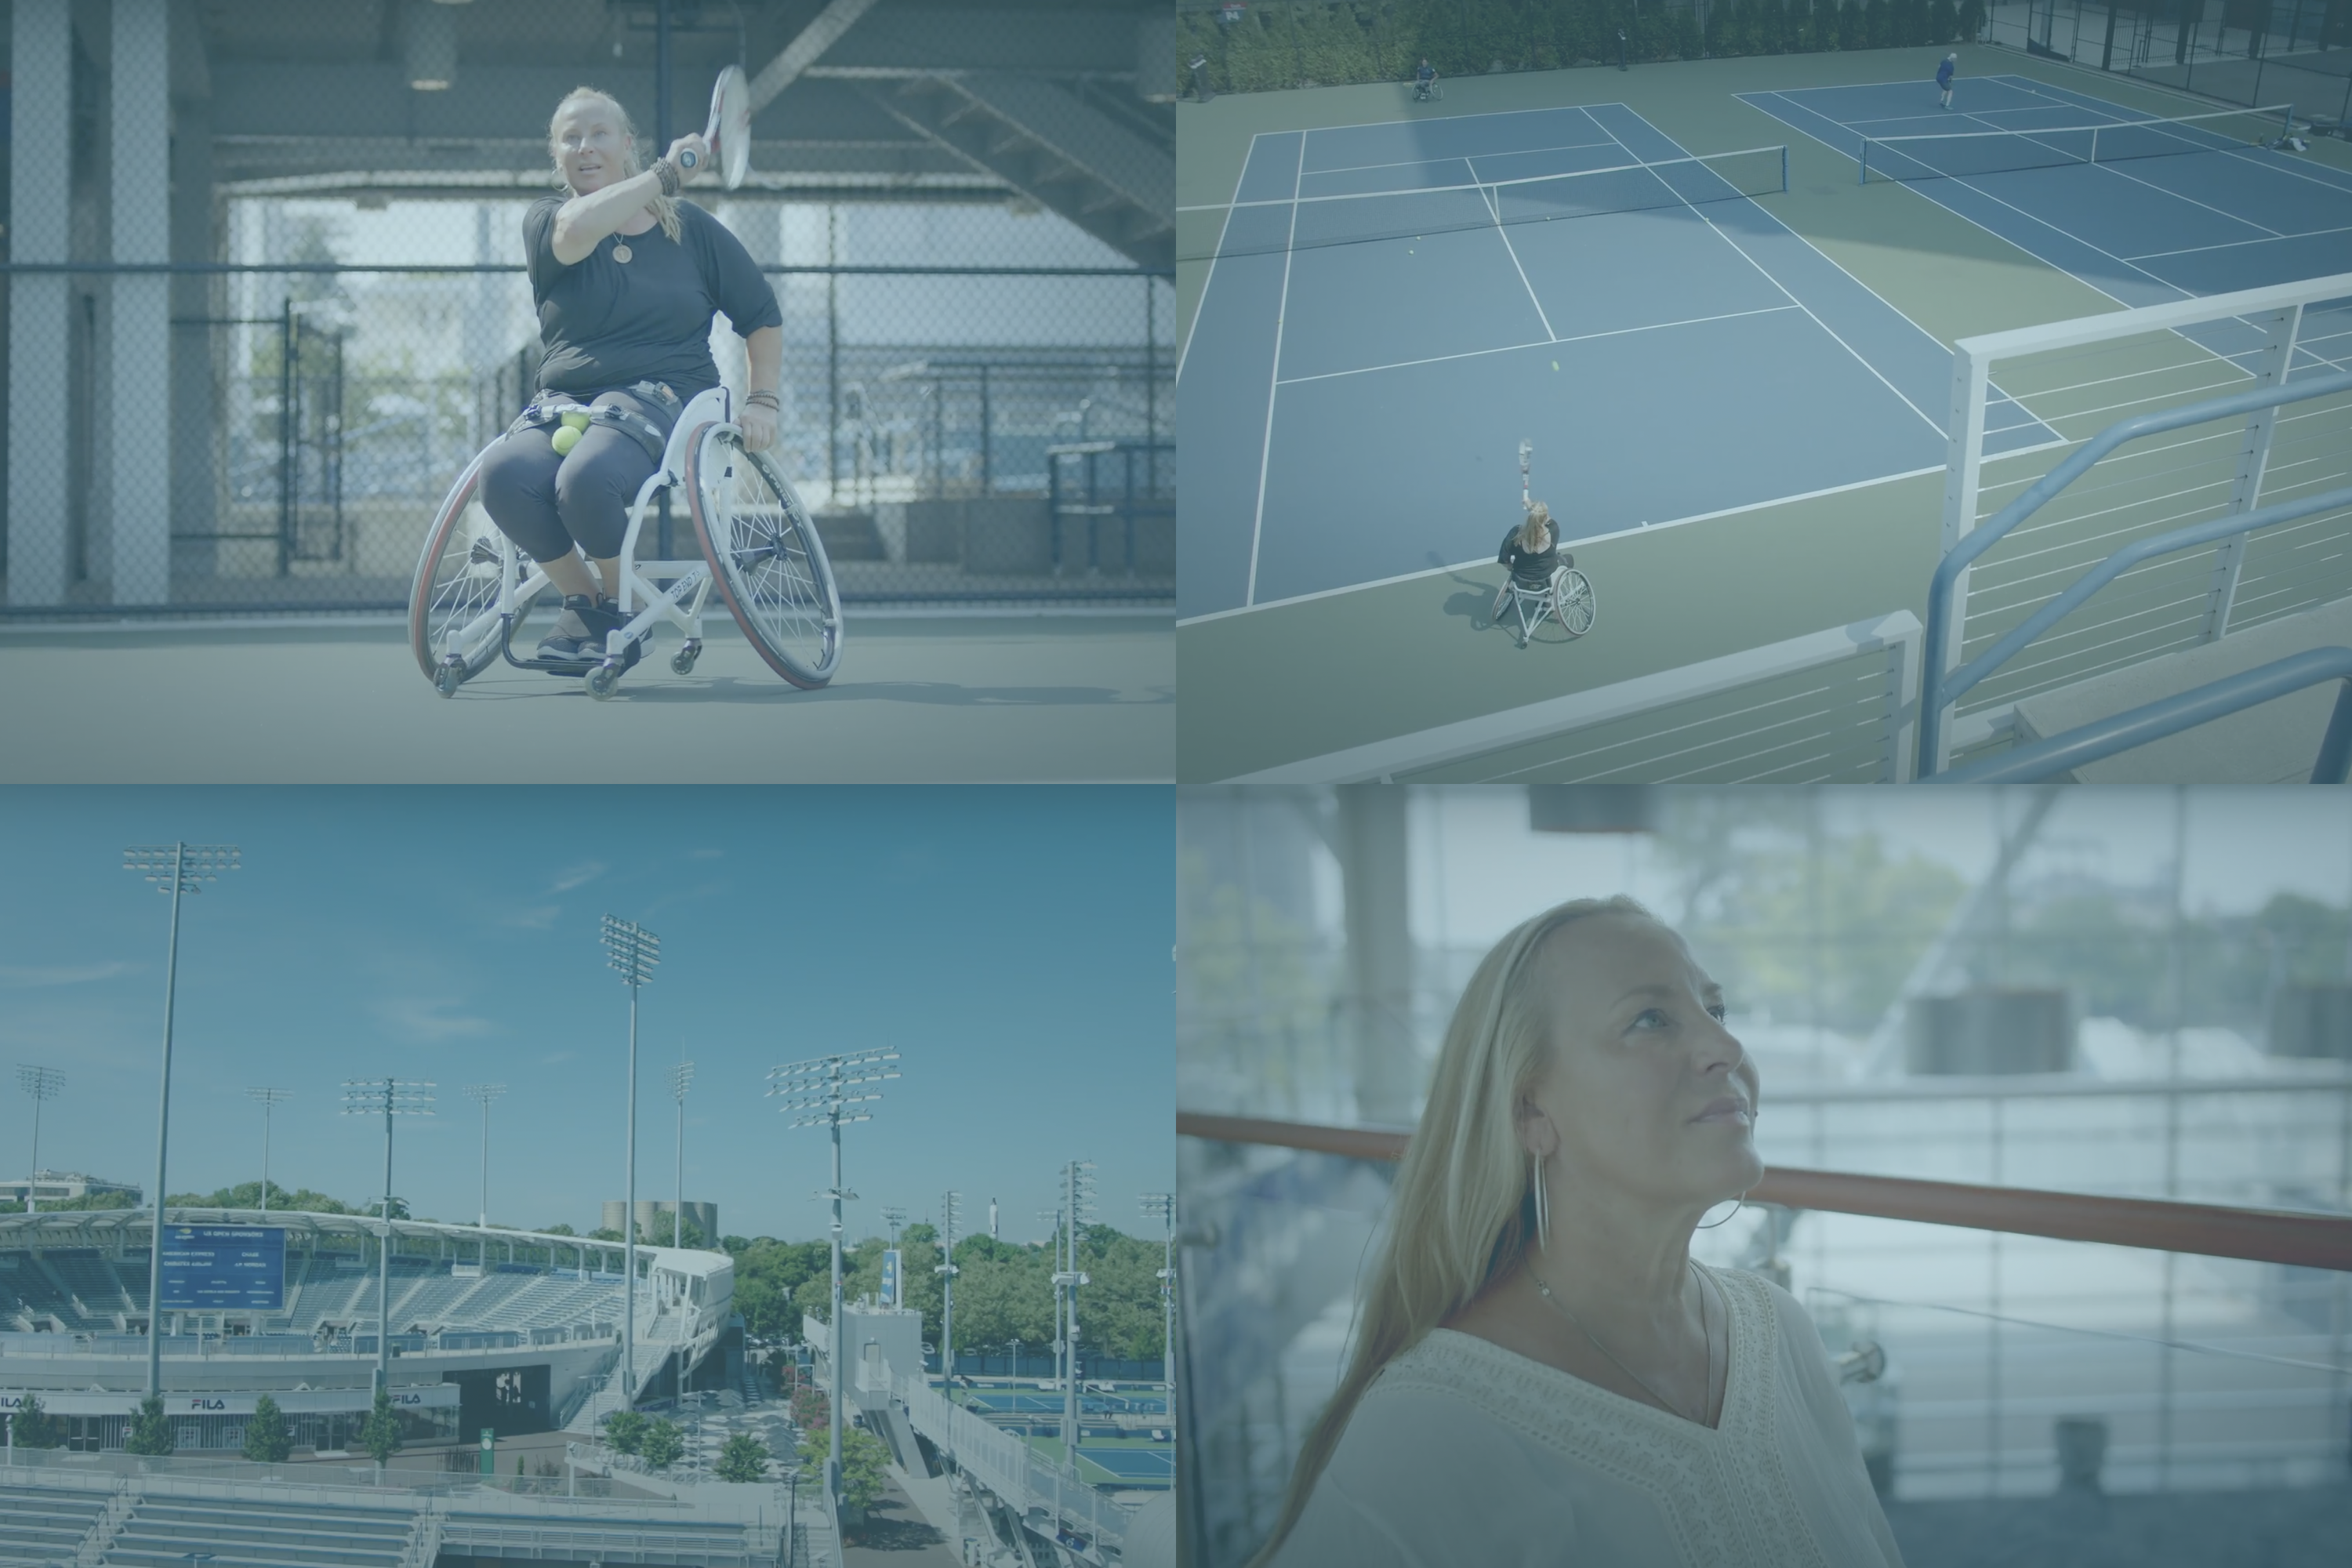 In Focus: United States Tennis Association